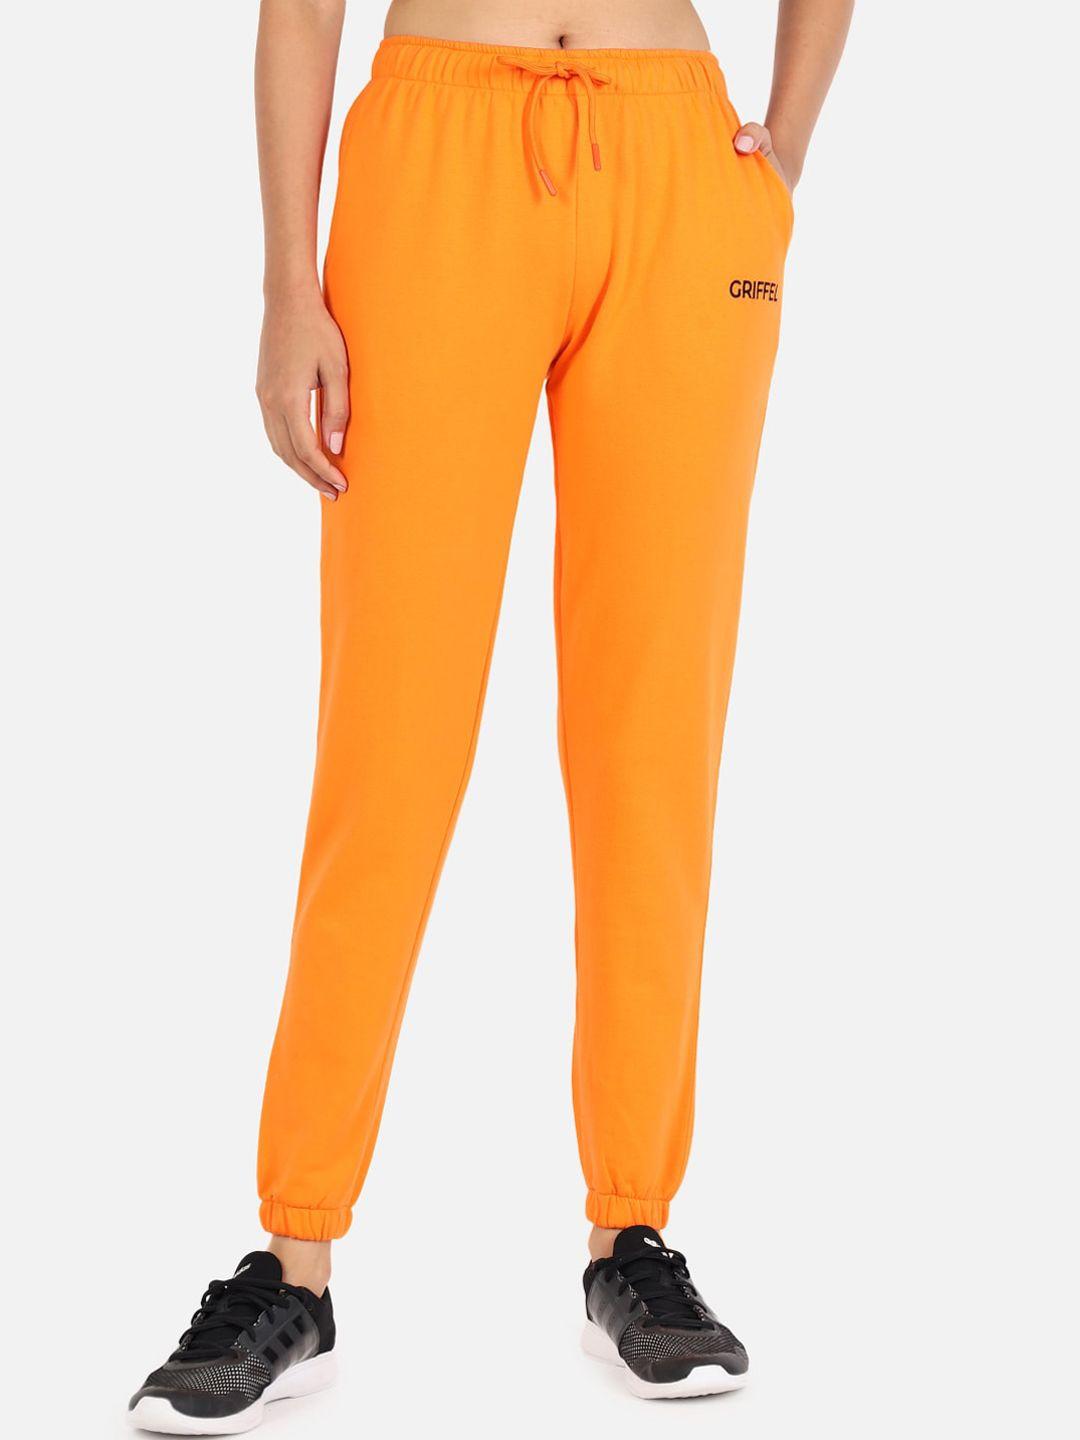 griffel-women-orange-solid-joggers